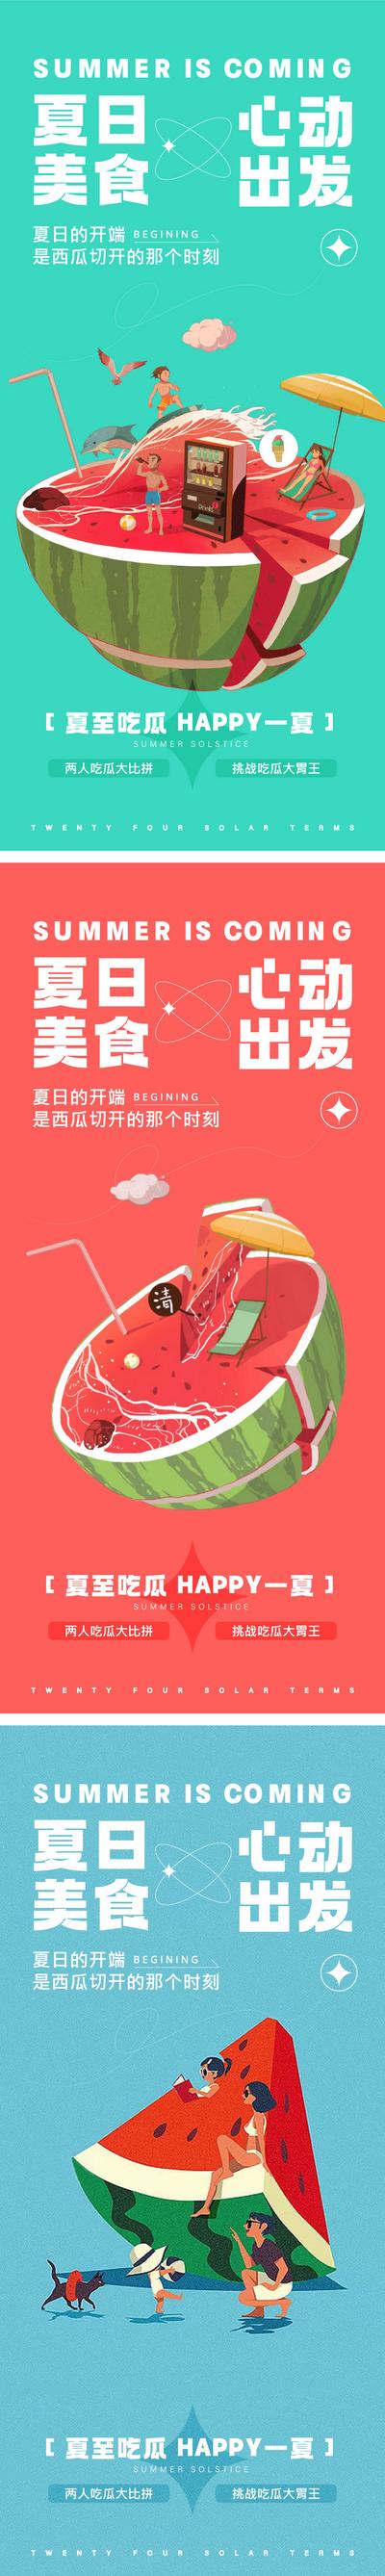 南门网 海报 夏日 吃瓜 大赛 活动 西瓜 缤纷 插画 系列